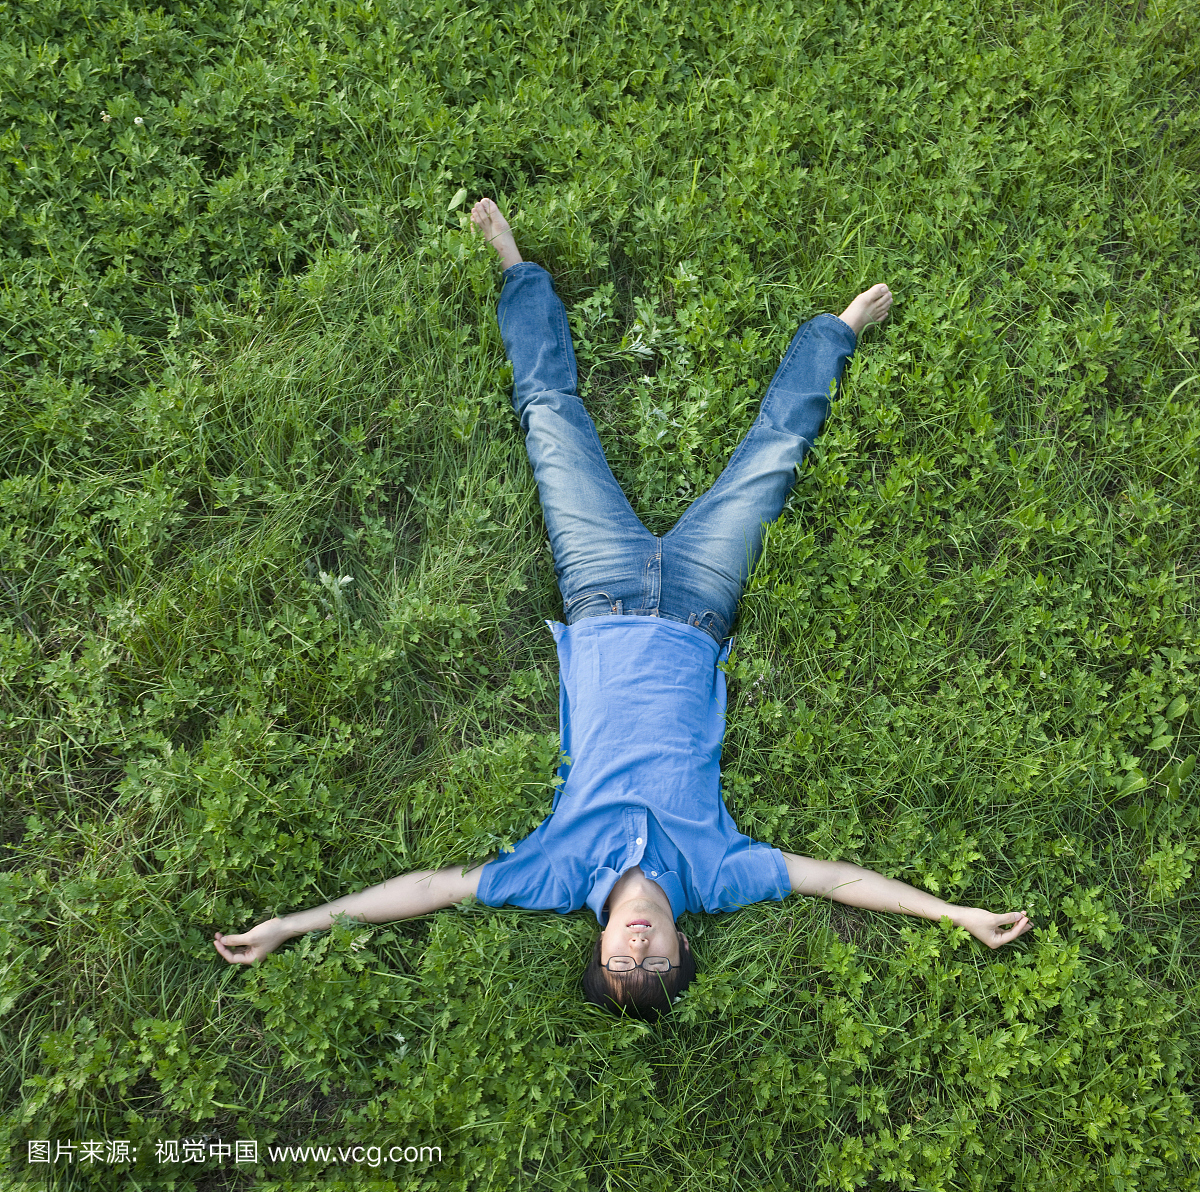 一个躺在草地上的男人,韩国人